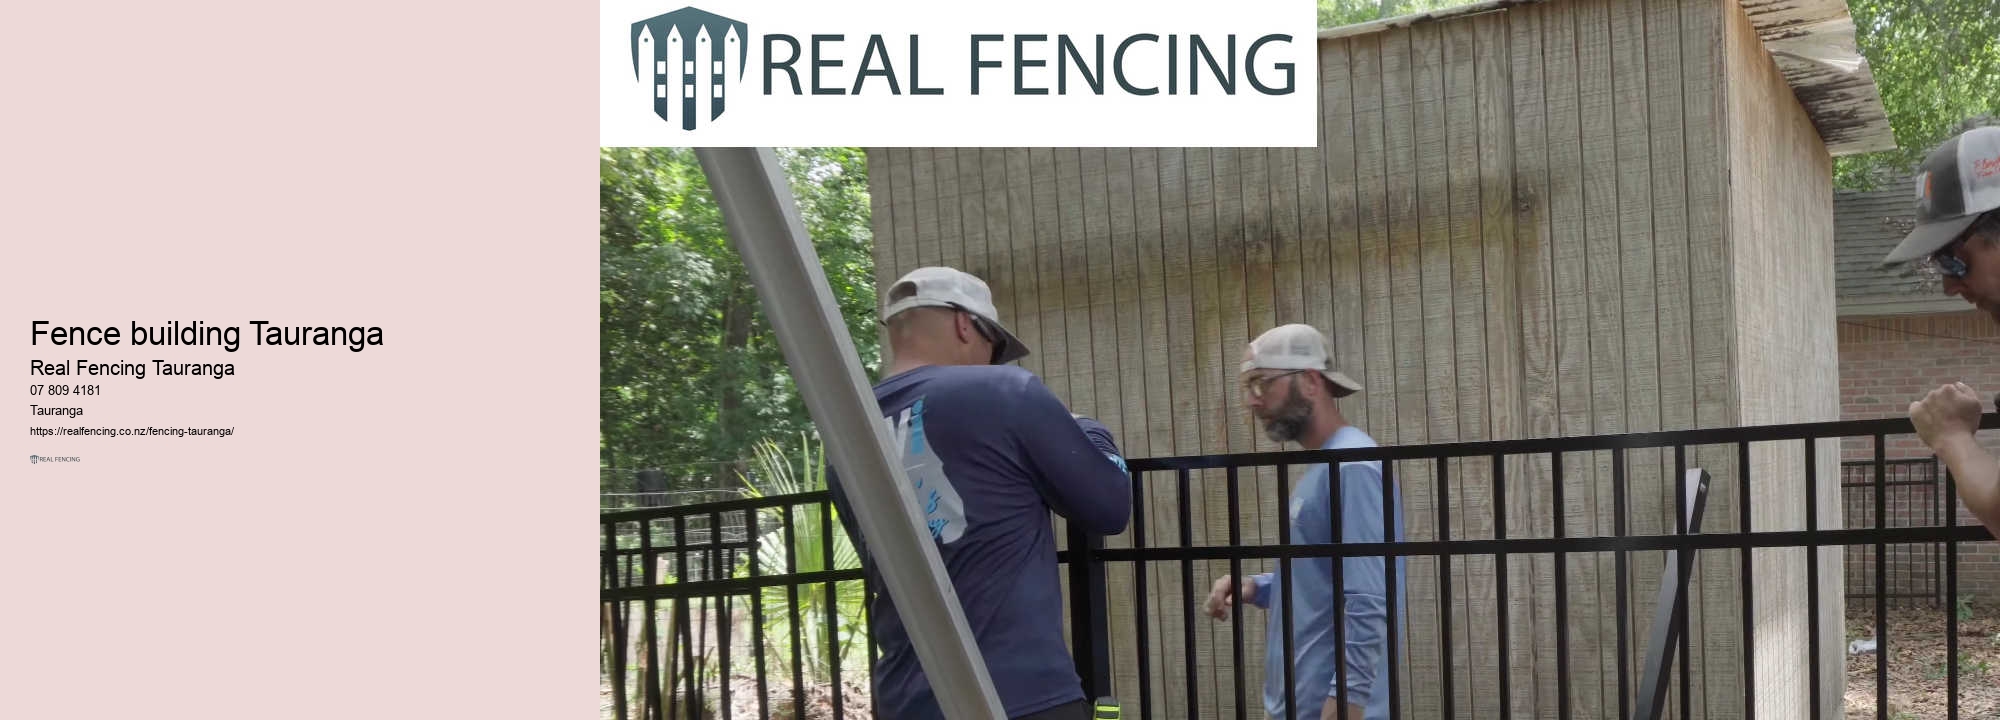 Aluminum fencing contractors near me